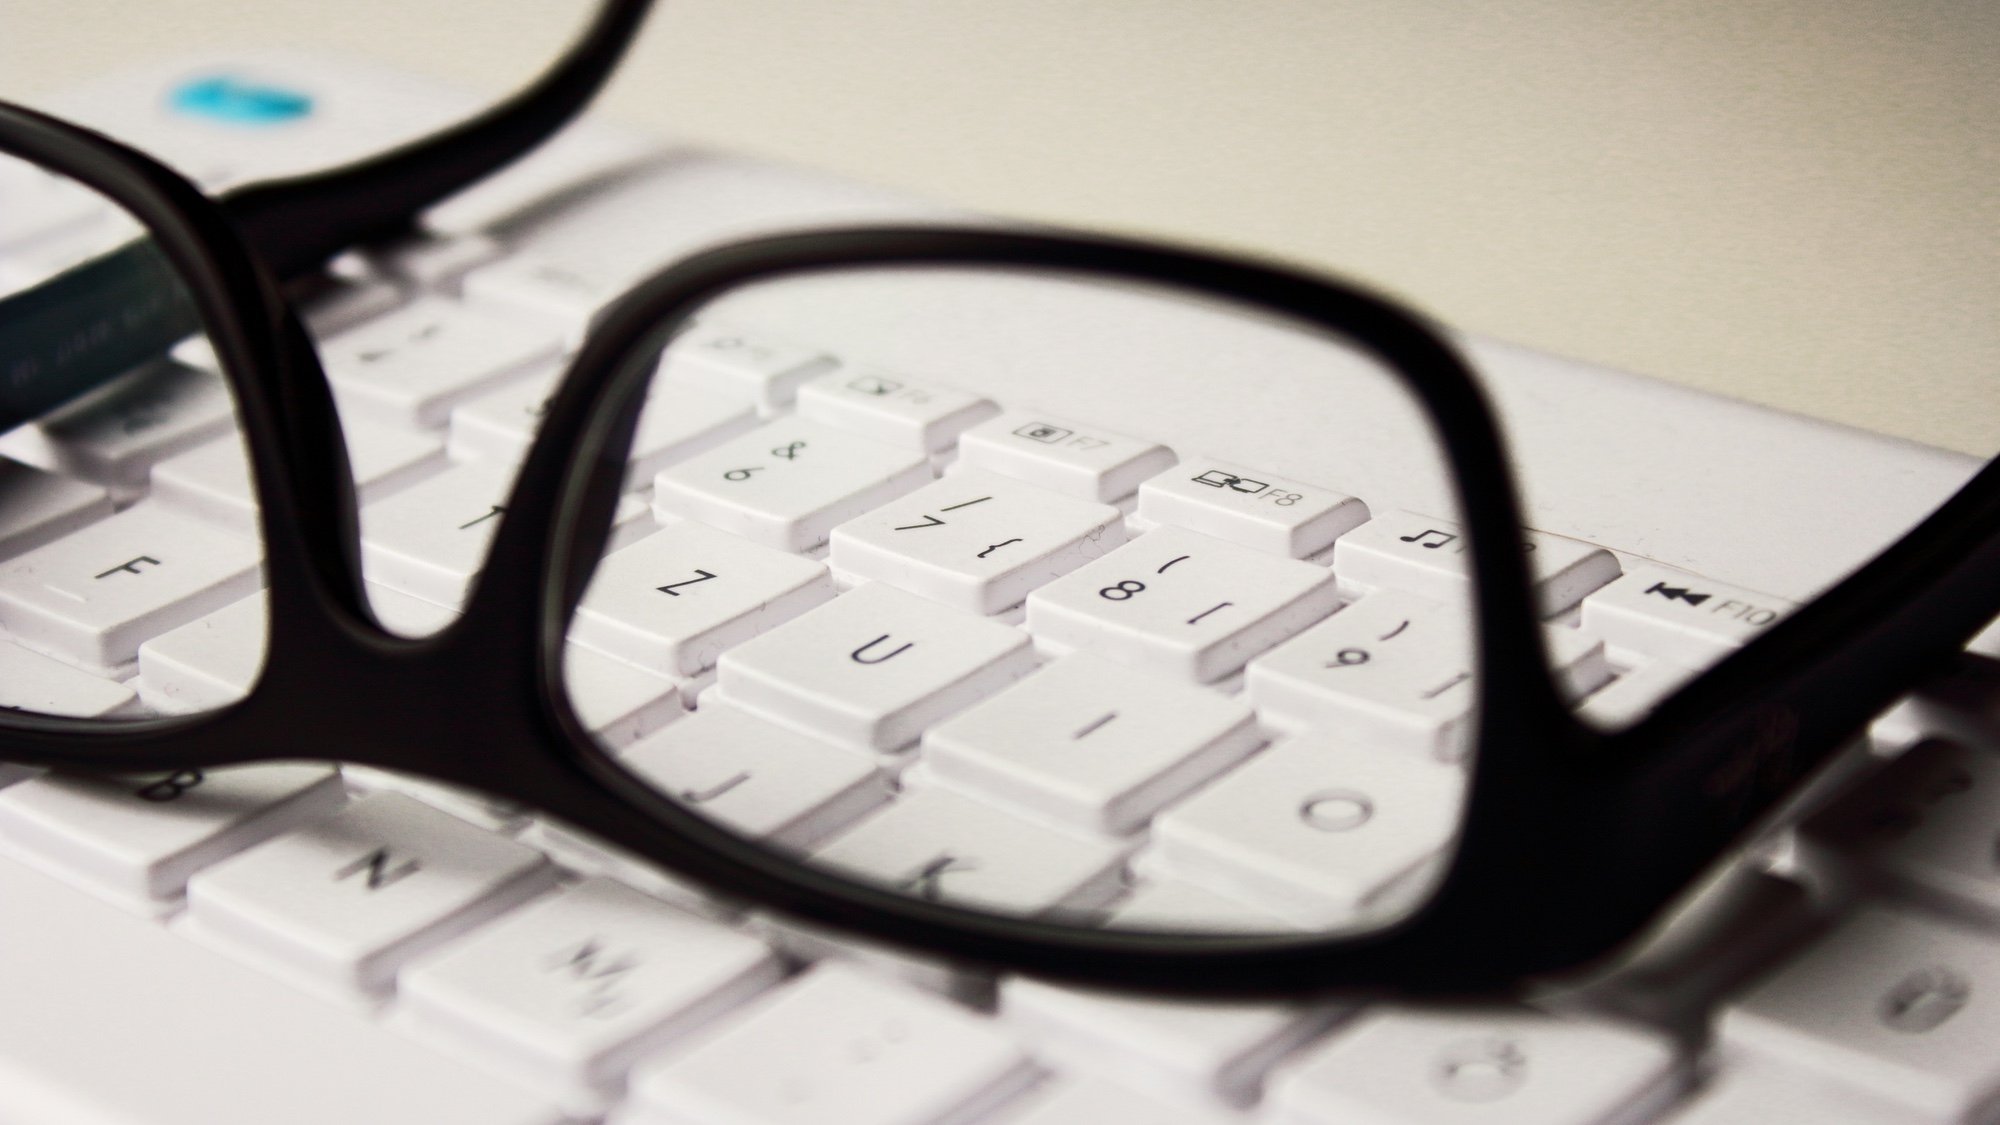 Foto: Schwarze Brille, die auf einer weissen Tastatur liegt